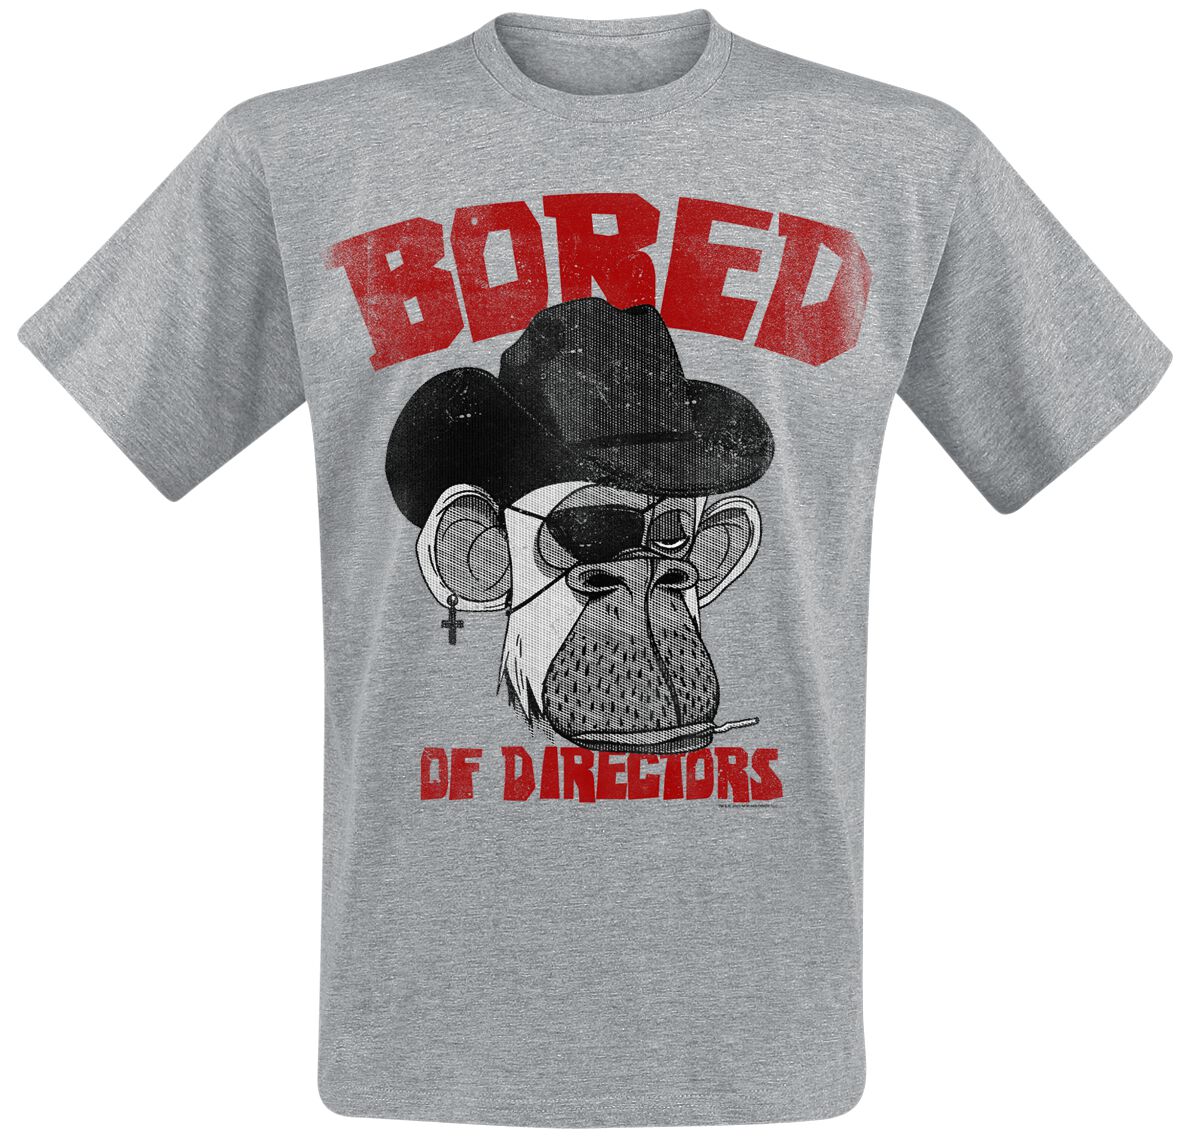 Bored Of Directors T-Shirt - Clint Apewood Vintage - S bis XXL - für Männer - Größe S - grau  - EMP exklusives Merchandise!